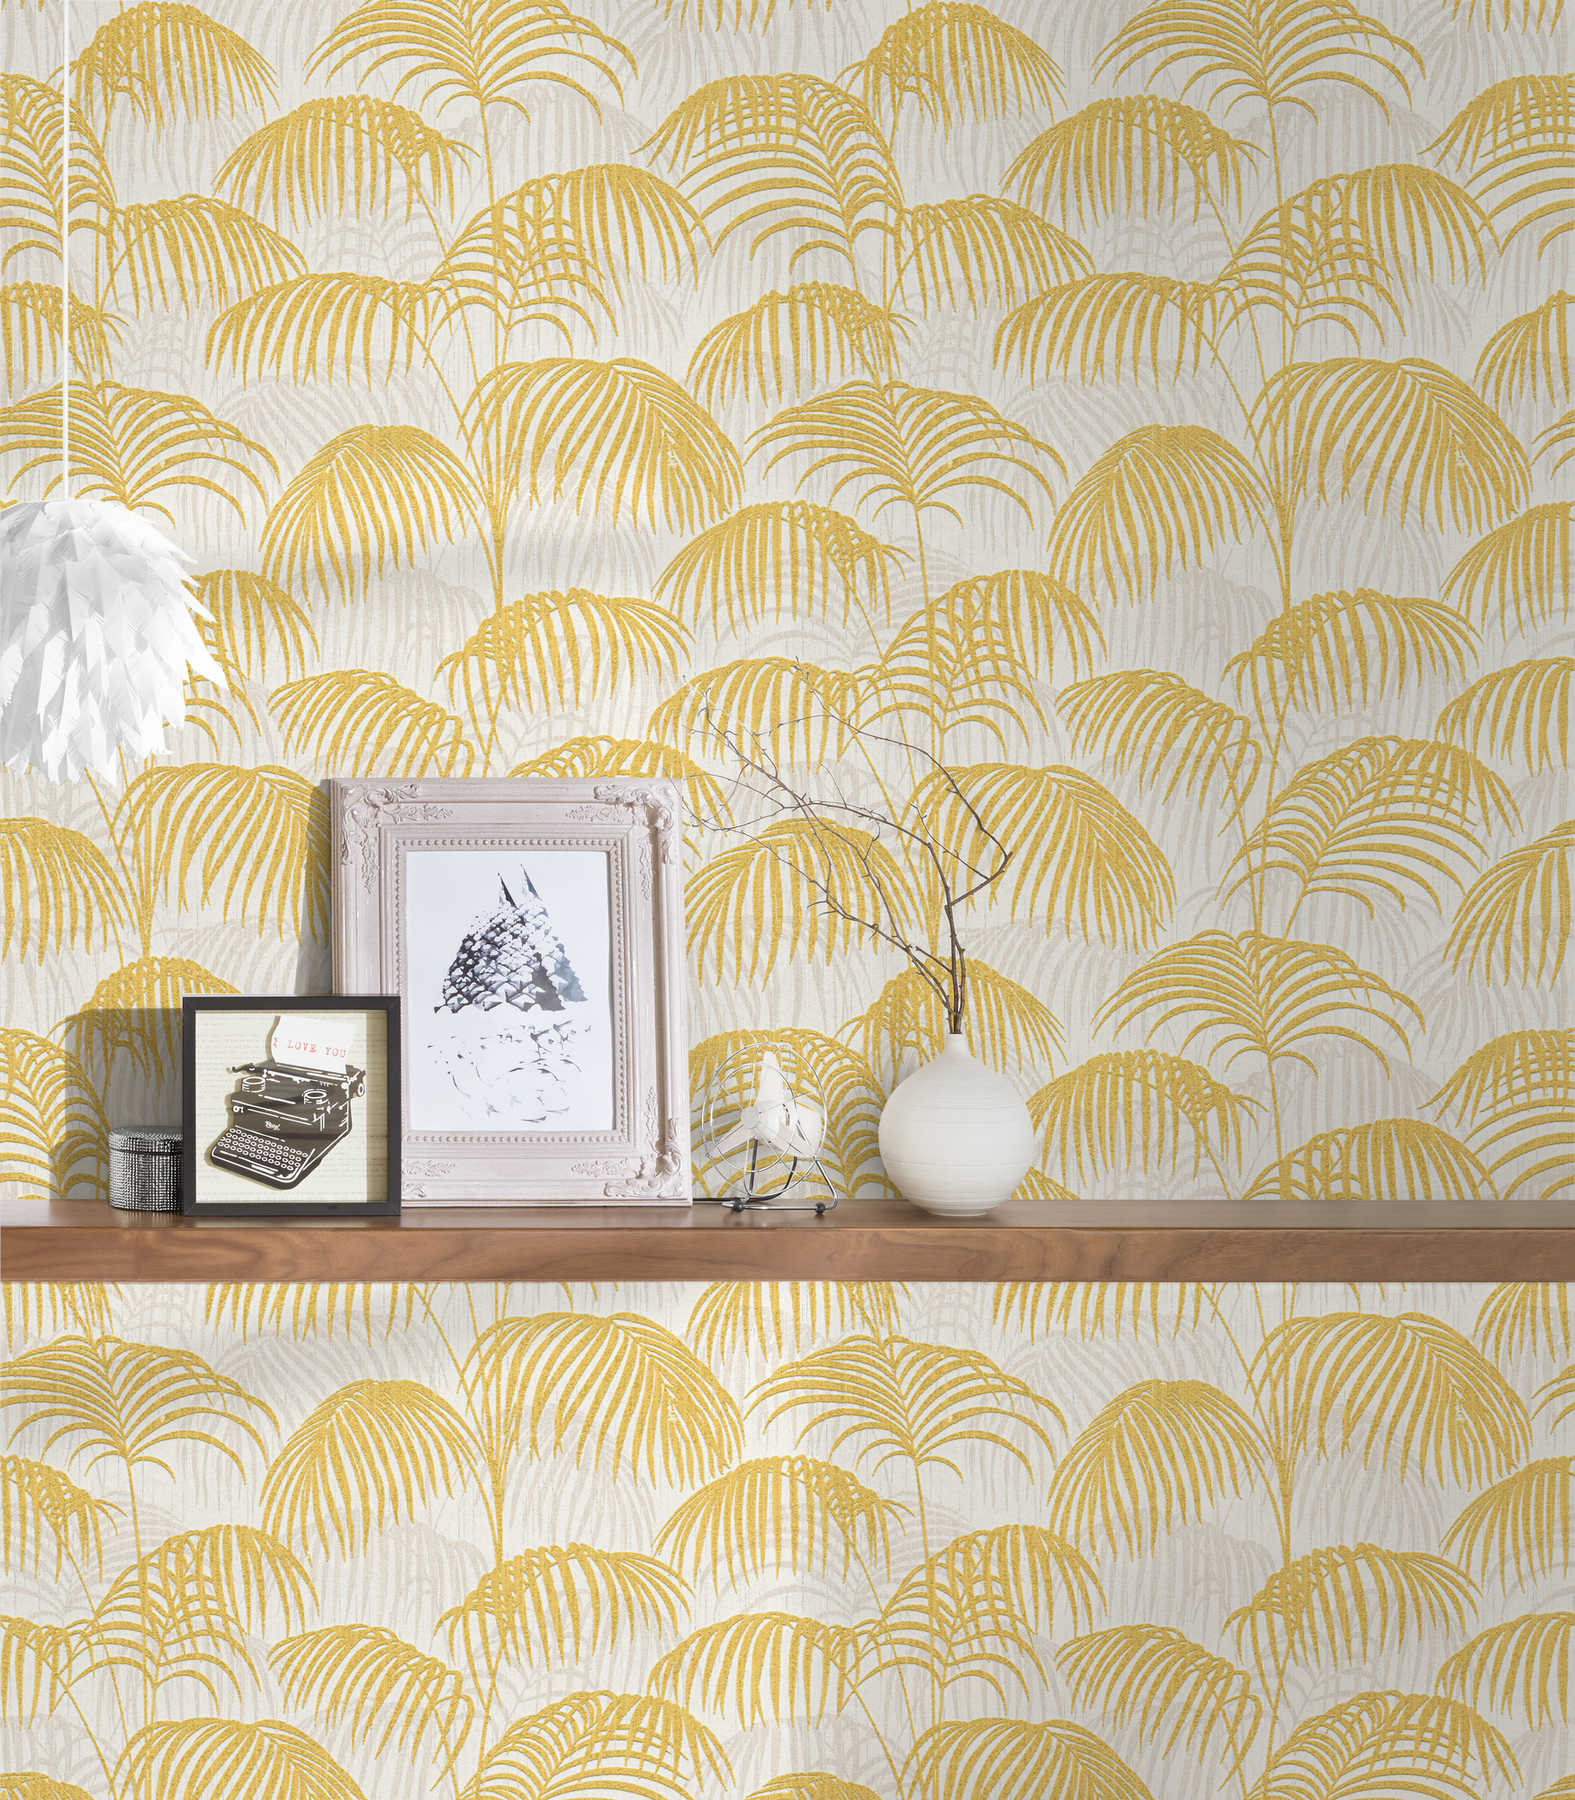             Papier peint palmier avec effet doré & design texturé - métallique, blanc
        